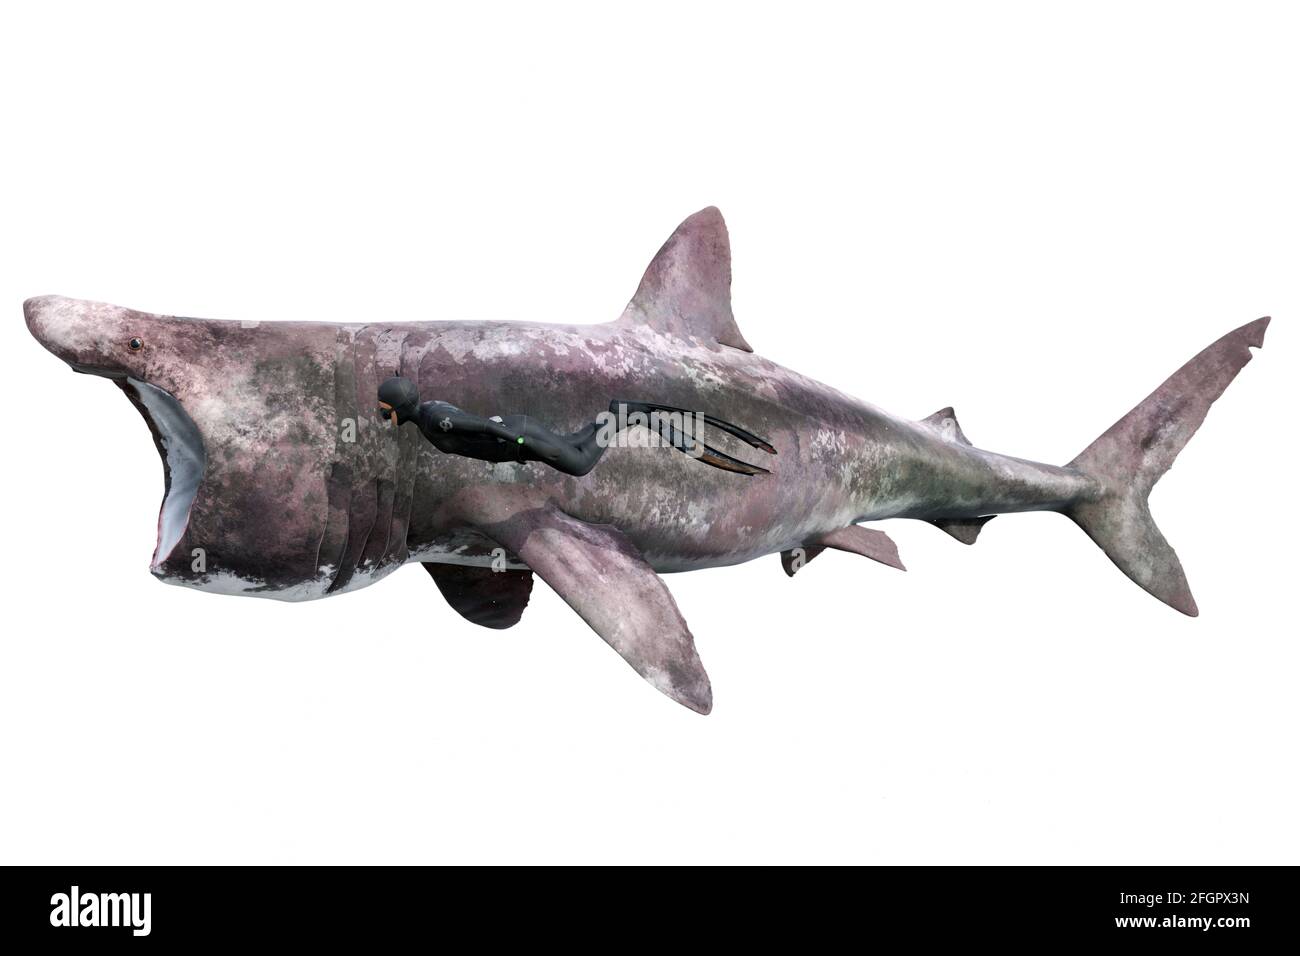 Basking shark, Cetorhinus maximus, and diver on white background Stock Photo